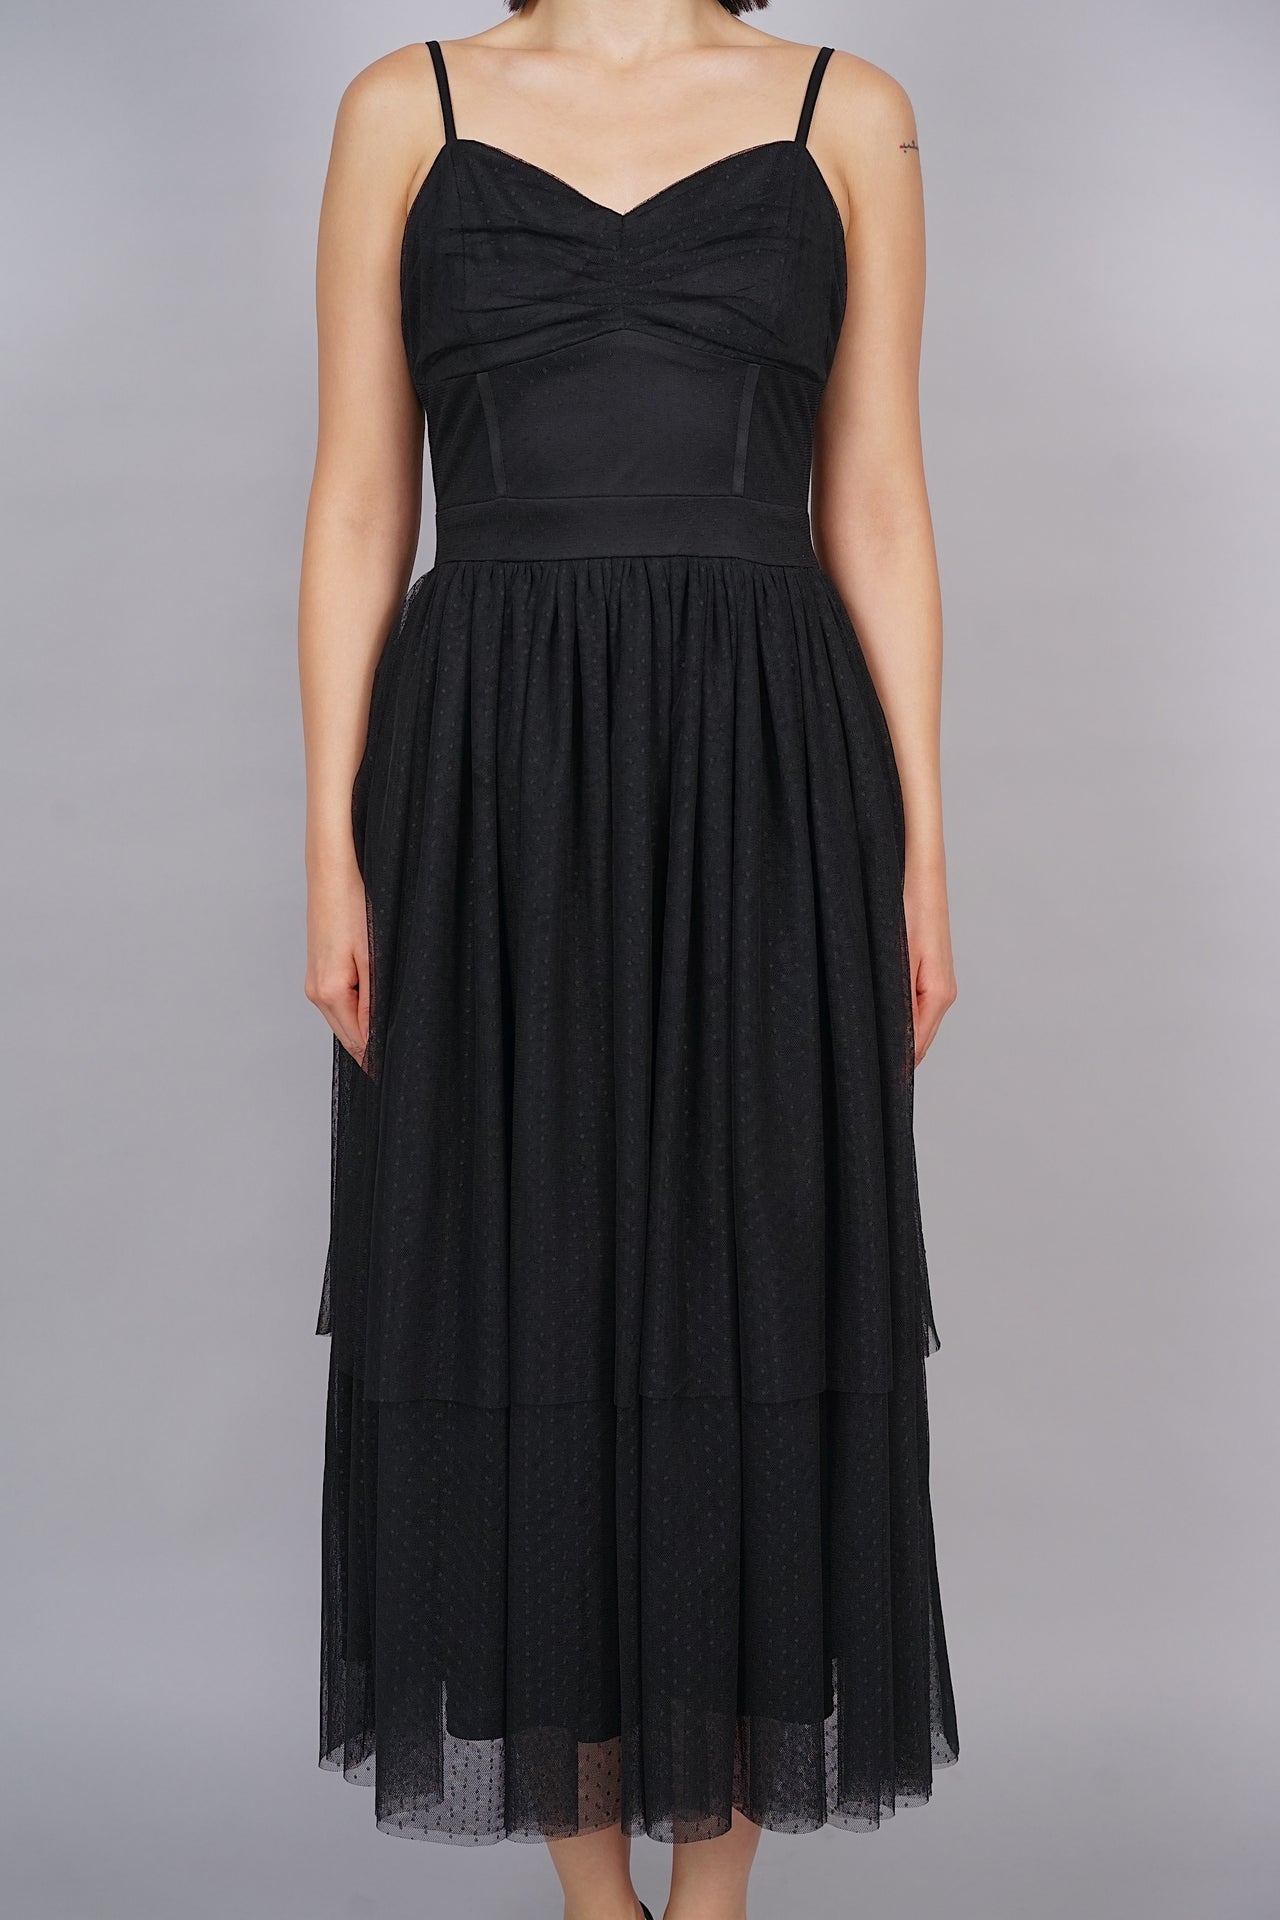 Sona Tulle Midi Dress in Black